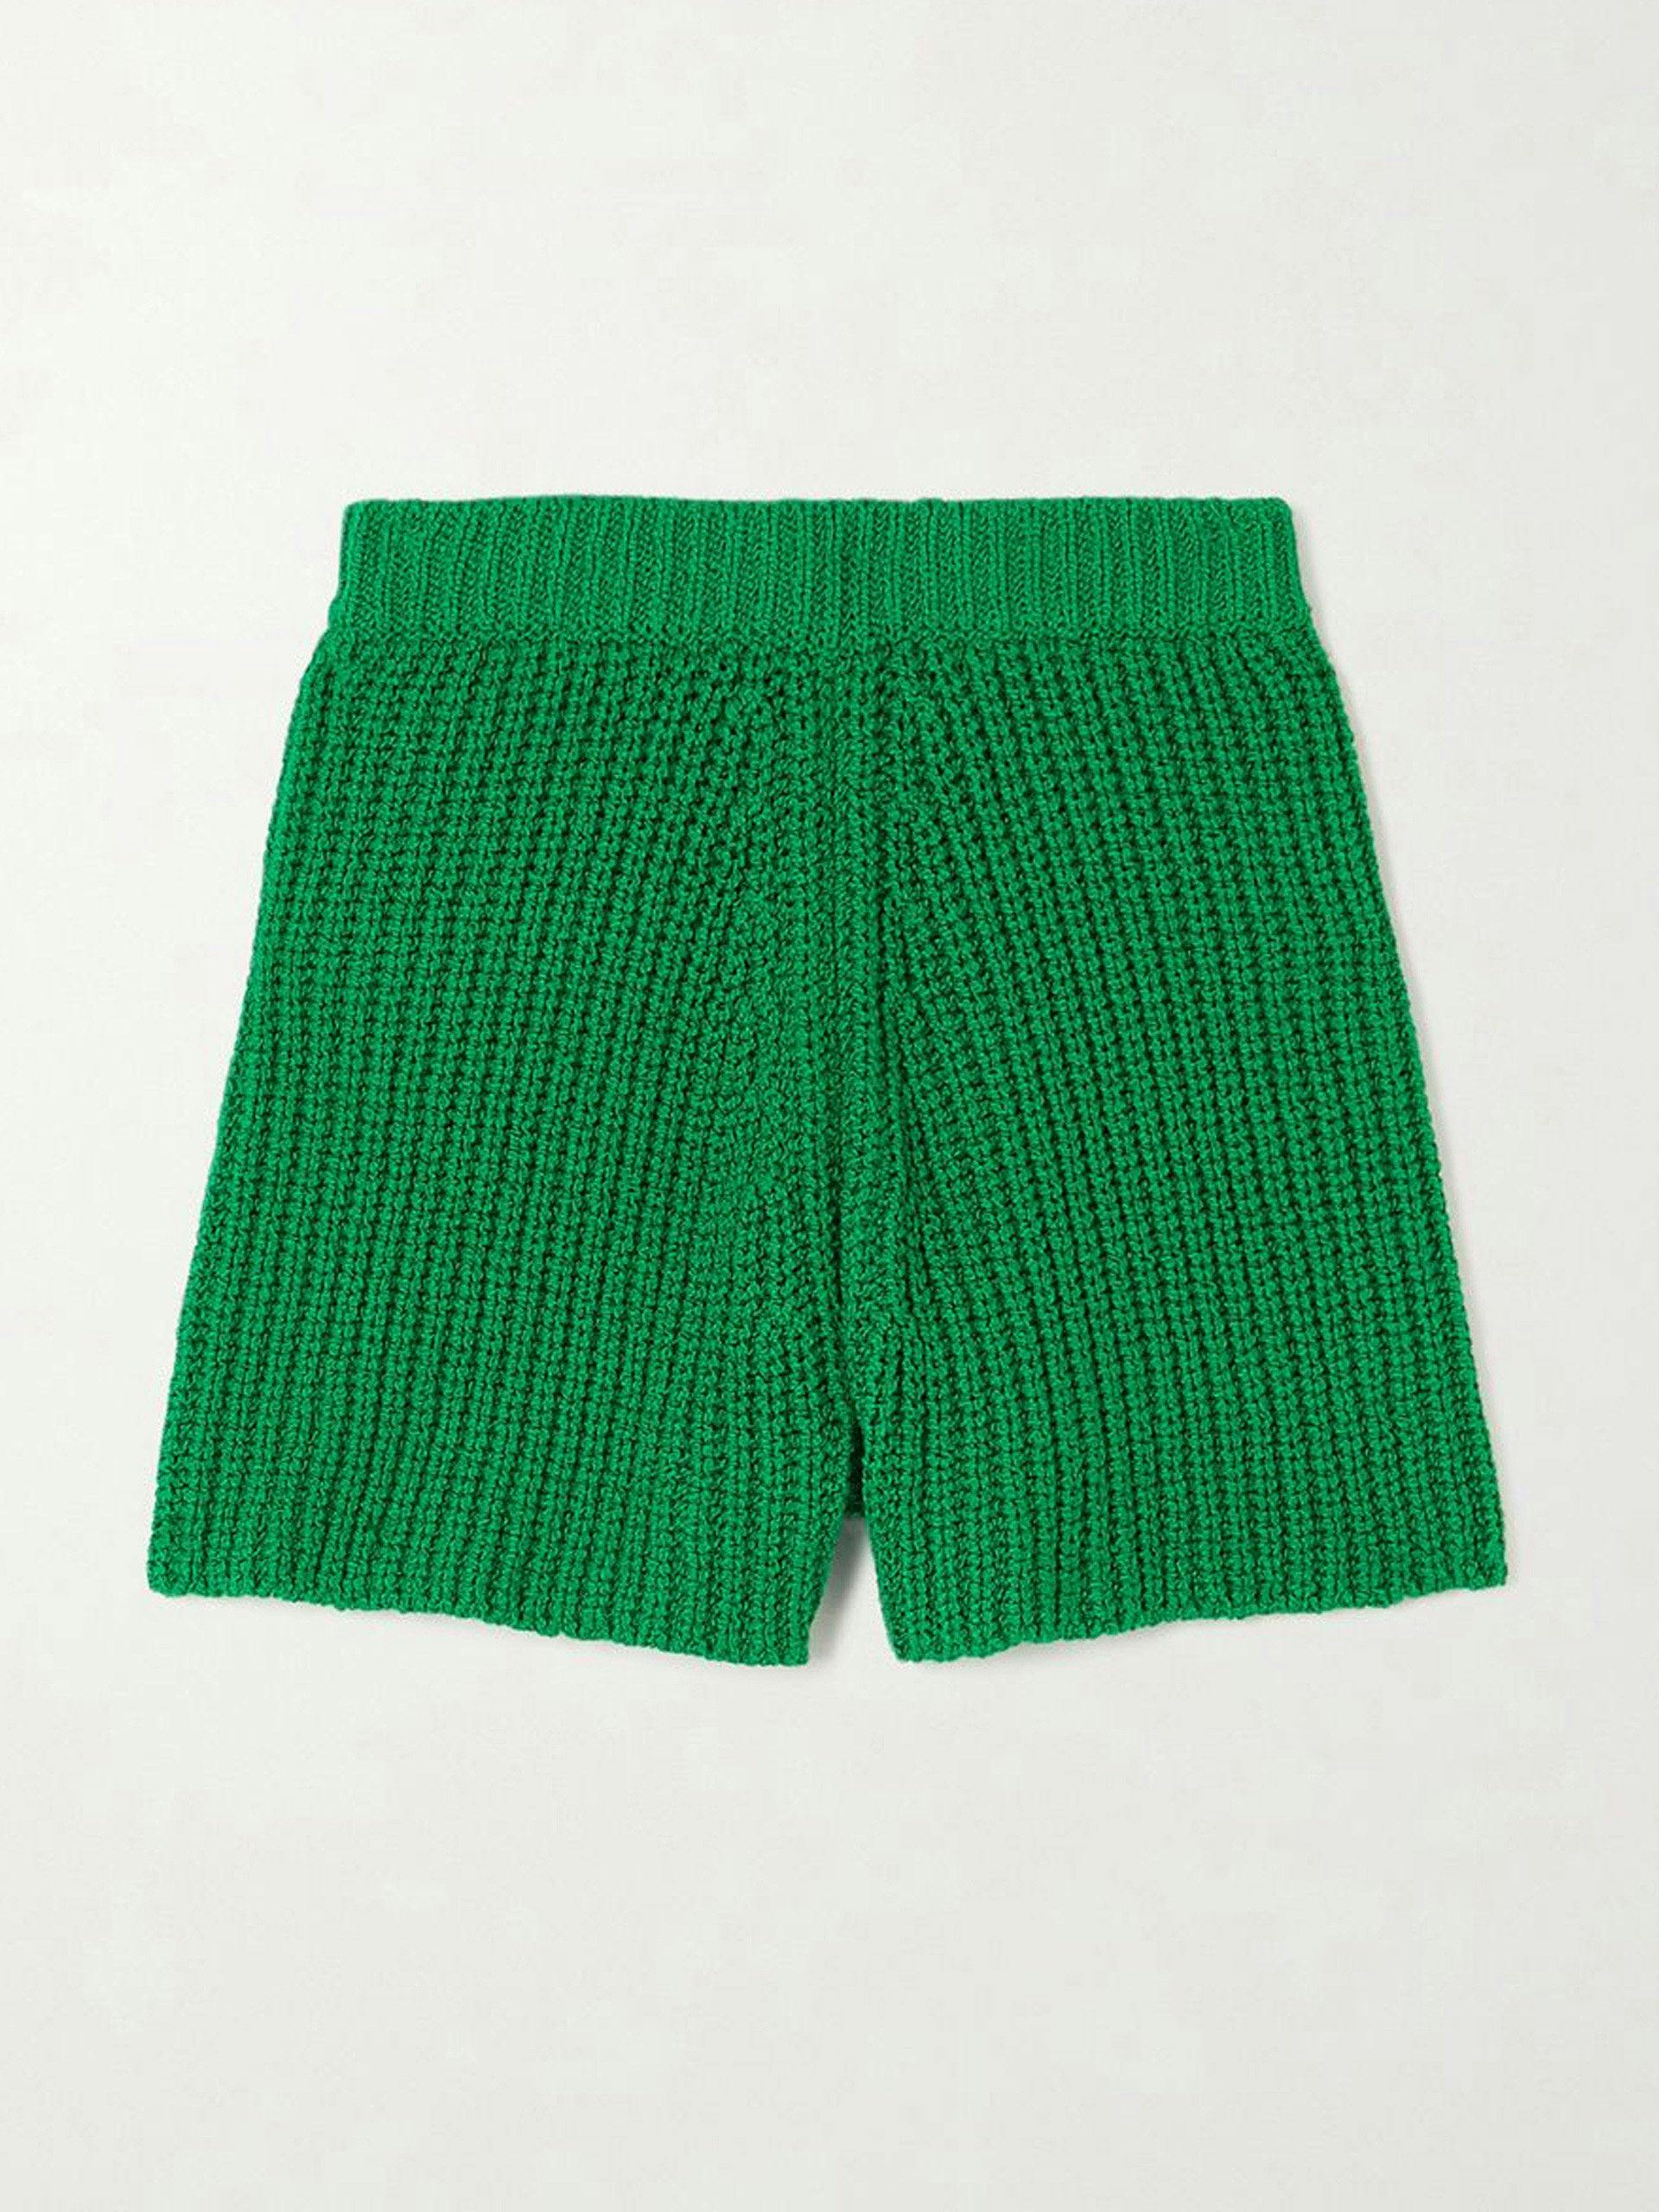 Green ribbed cotton shorts